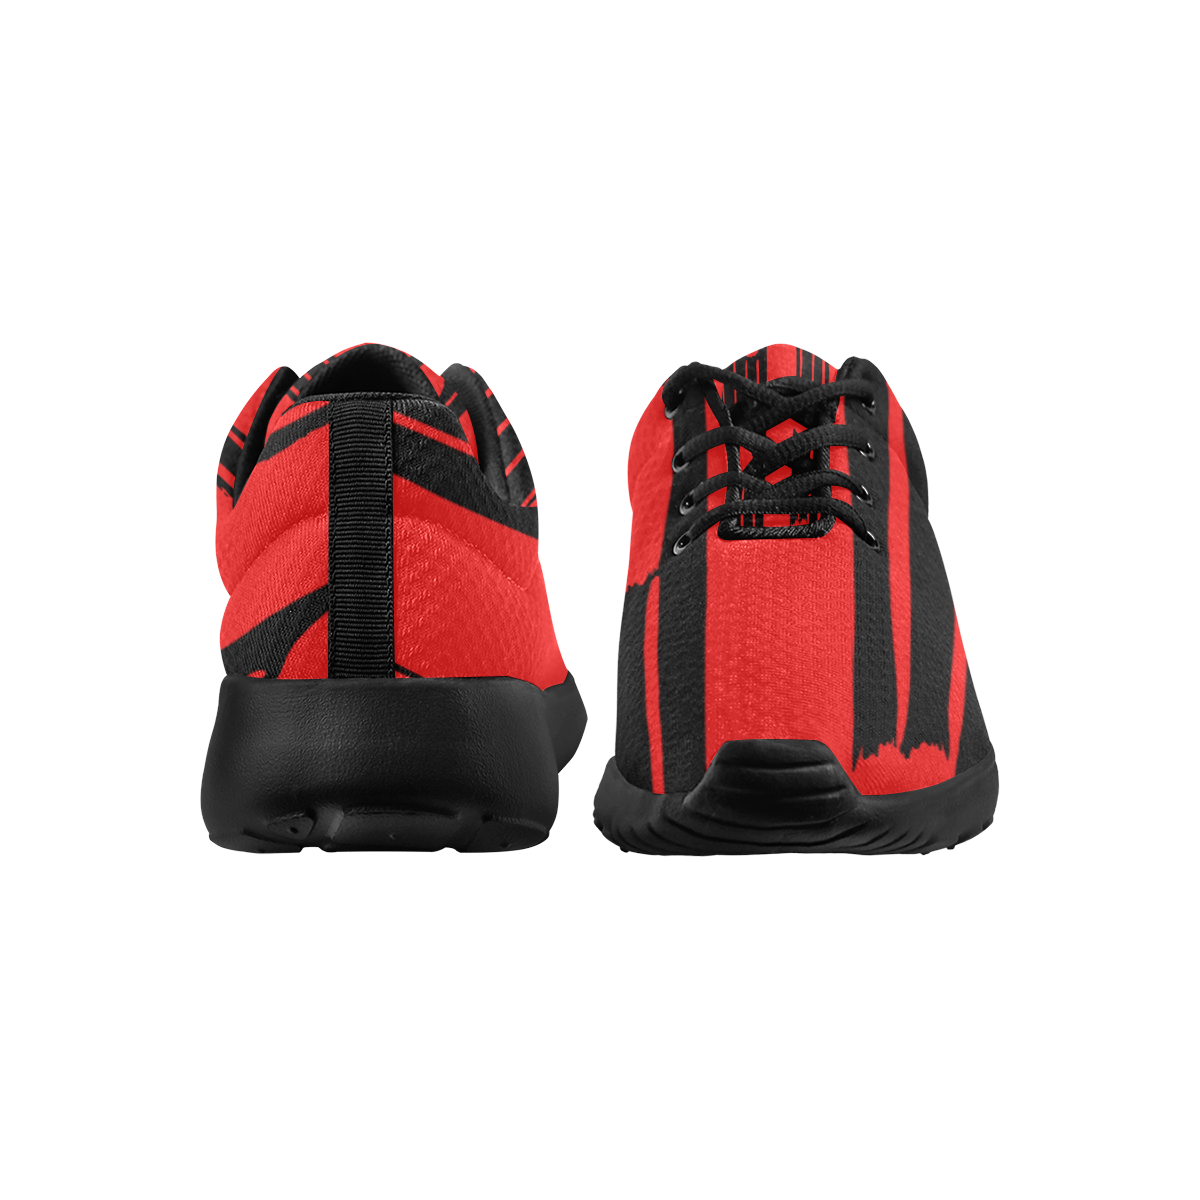 deportivas de hombre patron rojo y negro Men's Athletic Shoes (Model 0200)